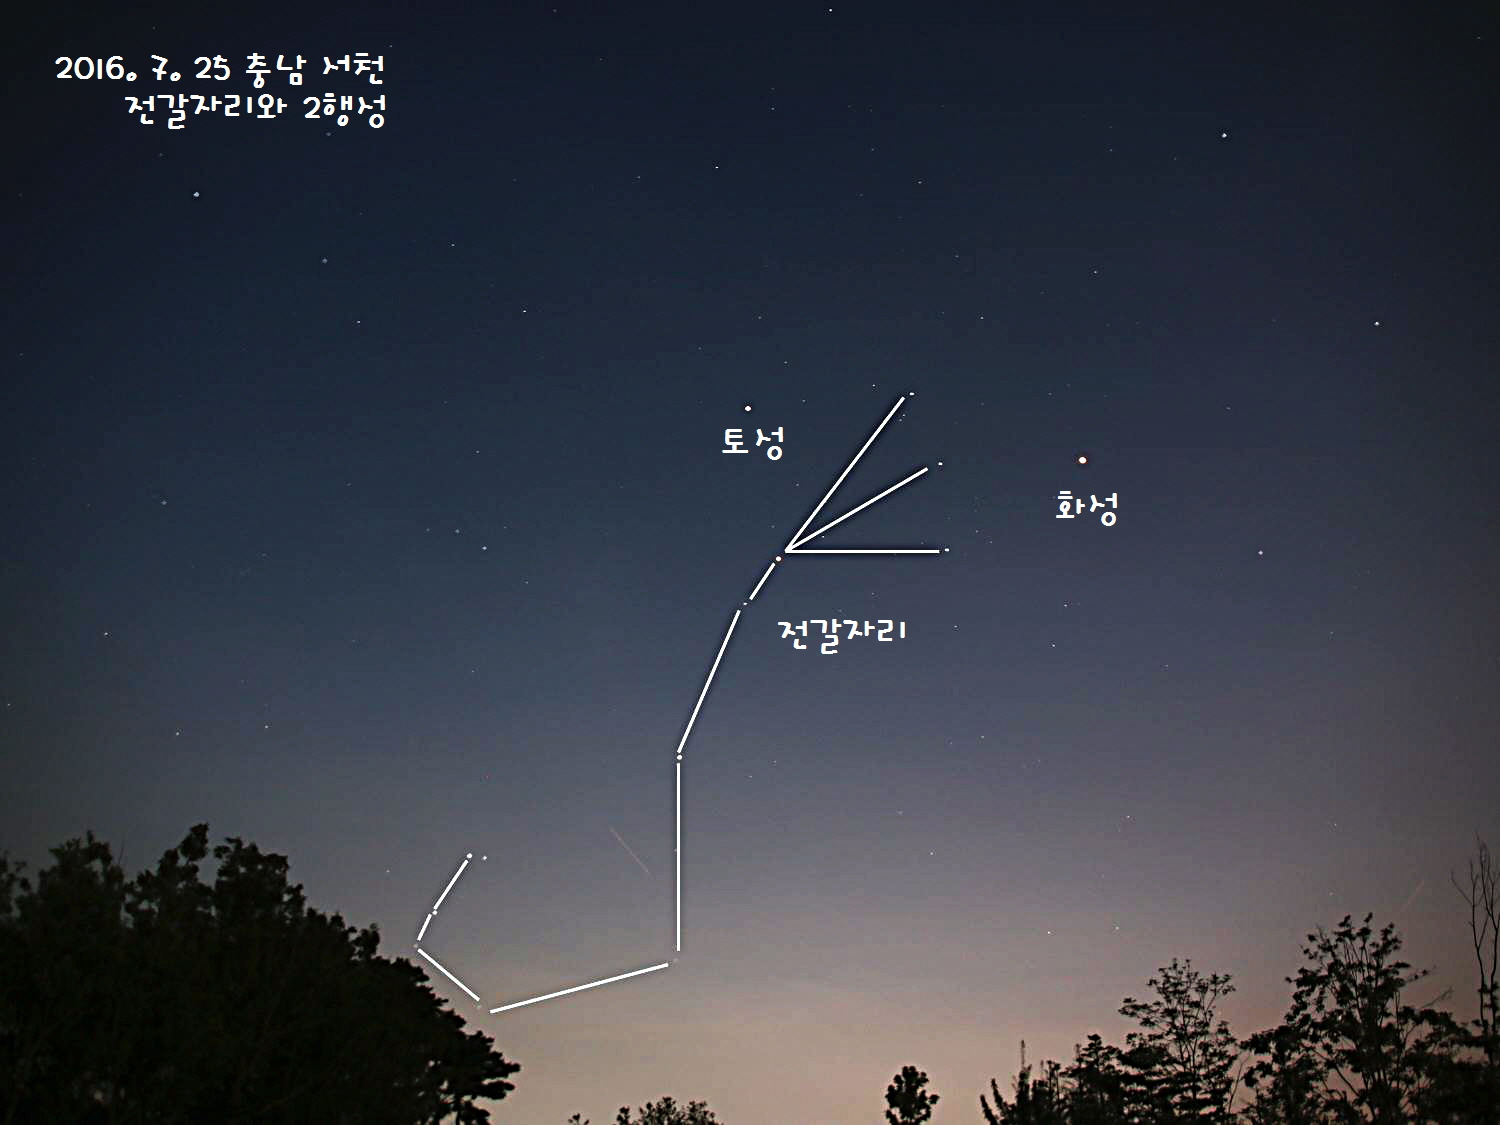 2016.7.25 서천에서의 전갈자리와 토성 화성 - 이름.jpg